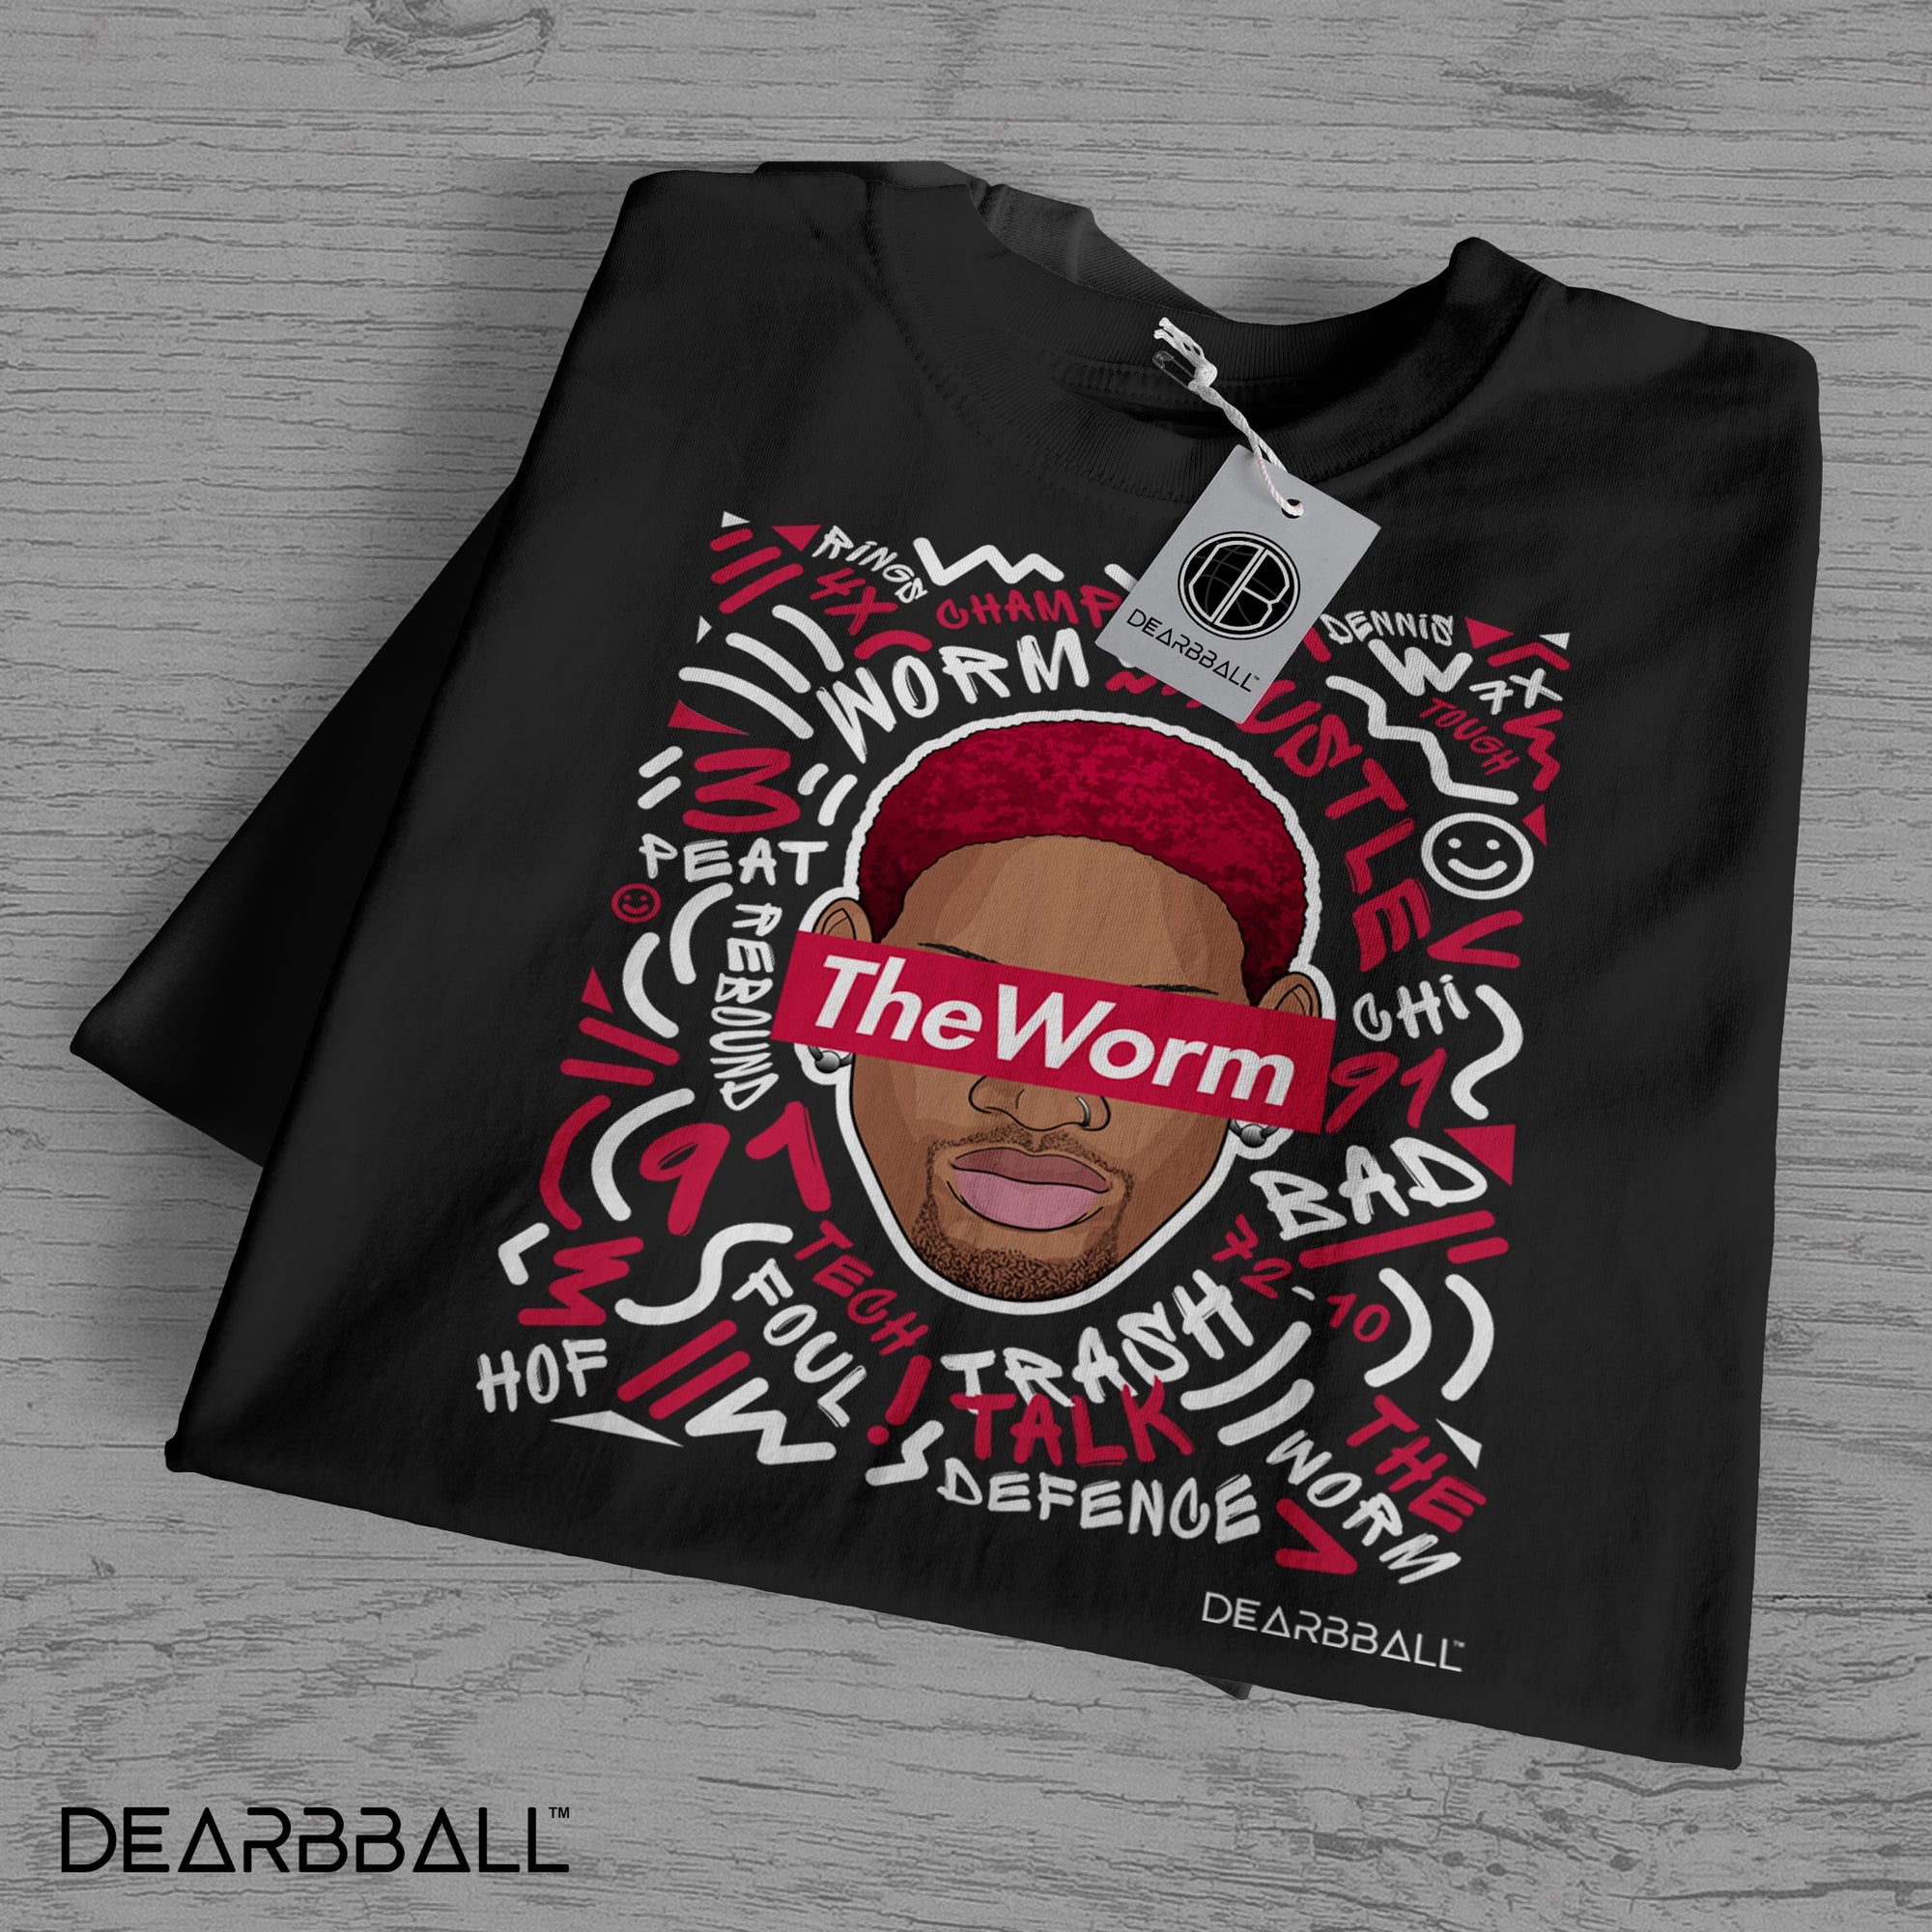 Camiseta DearBBall - Edición The Worm Words Matter